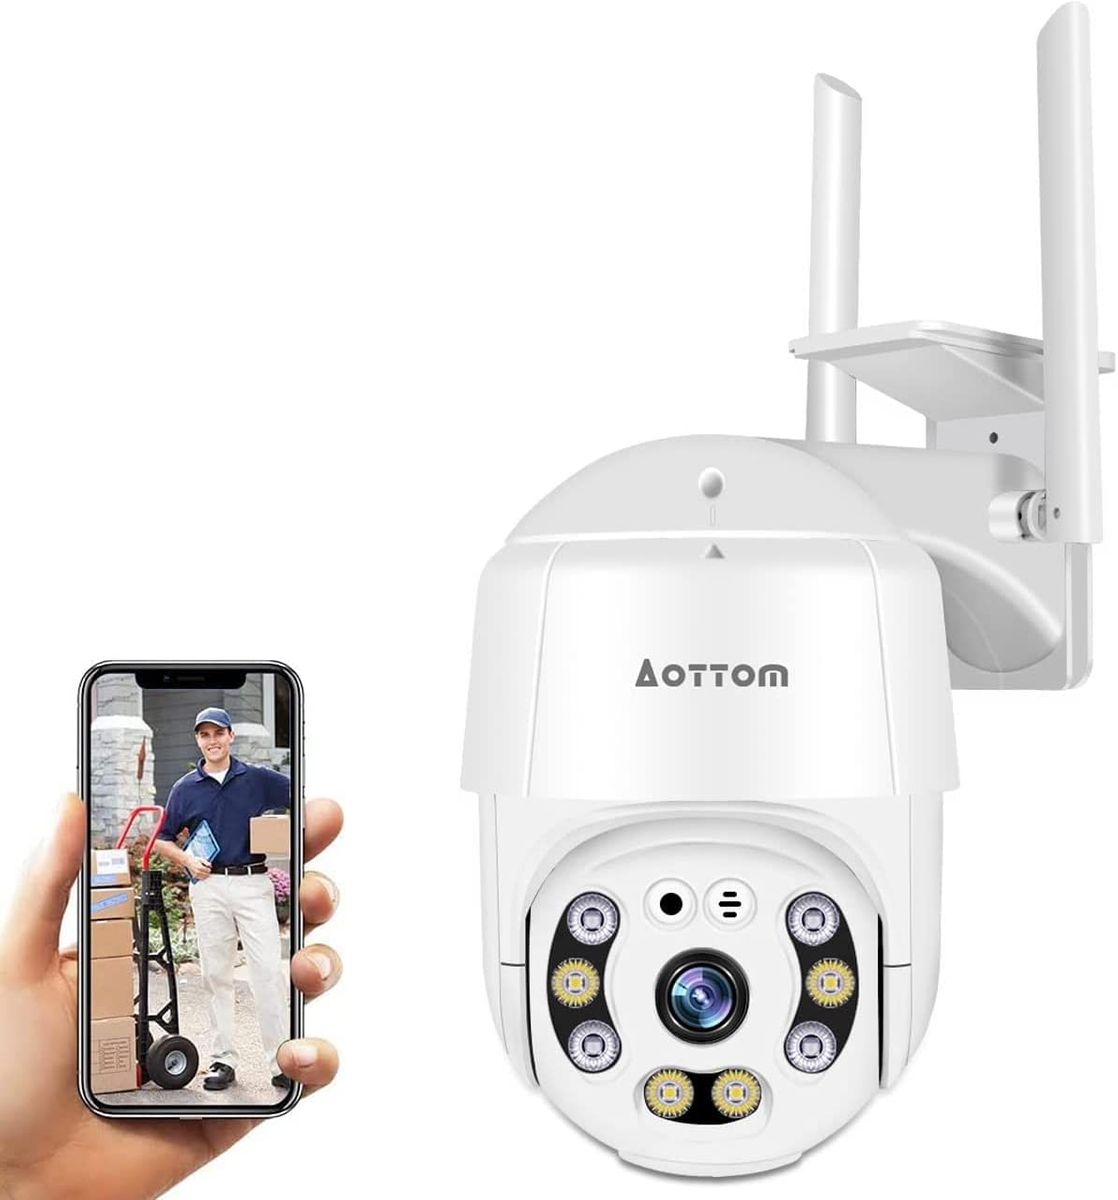 Aottom Überwachungskamera Aussen, 1080P WLAN IP Kamera Outdoor PTZ Dome Kamera, Sicherheitskamera mit Bewegungsmelder, 40m Nachtsicht, 2-Wege-Audio, IP66 Wasserdicht, APP YI Lot, SD Kartenslot(MAX.128 GB)